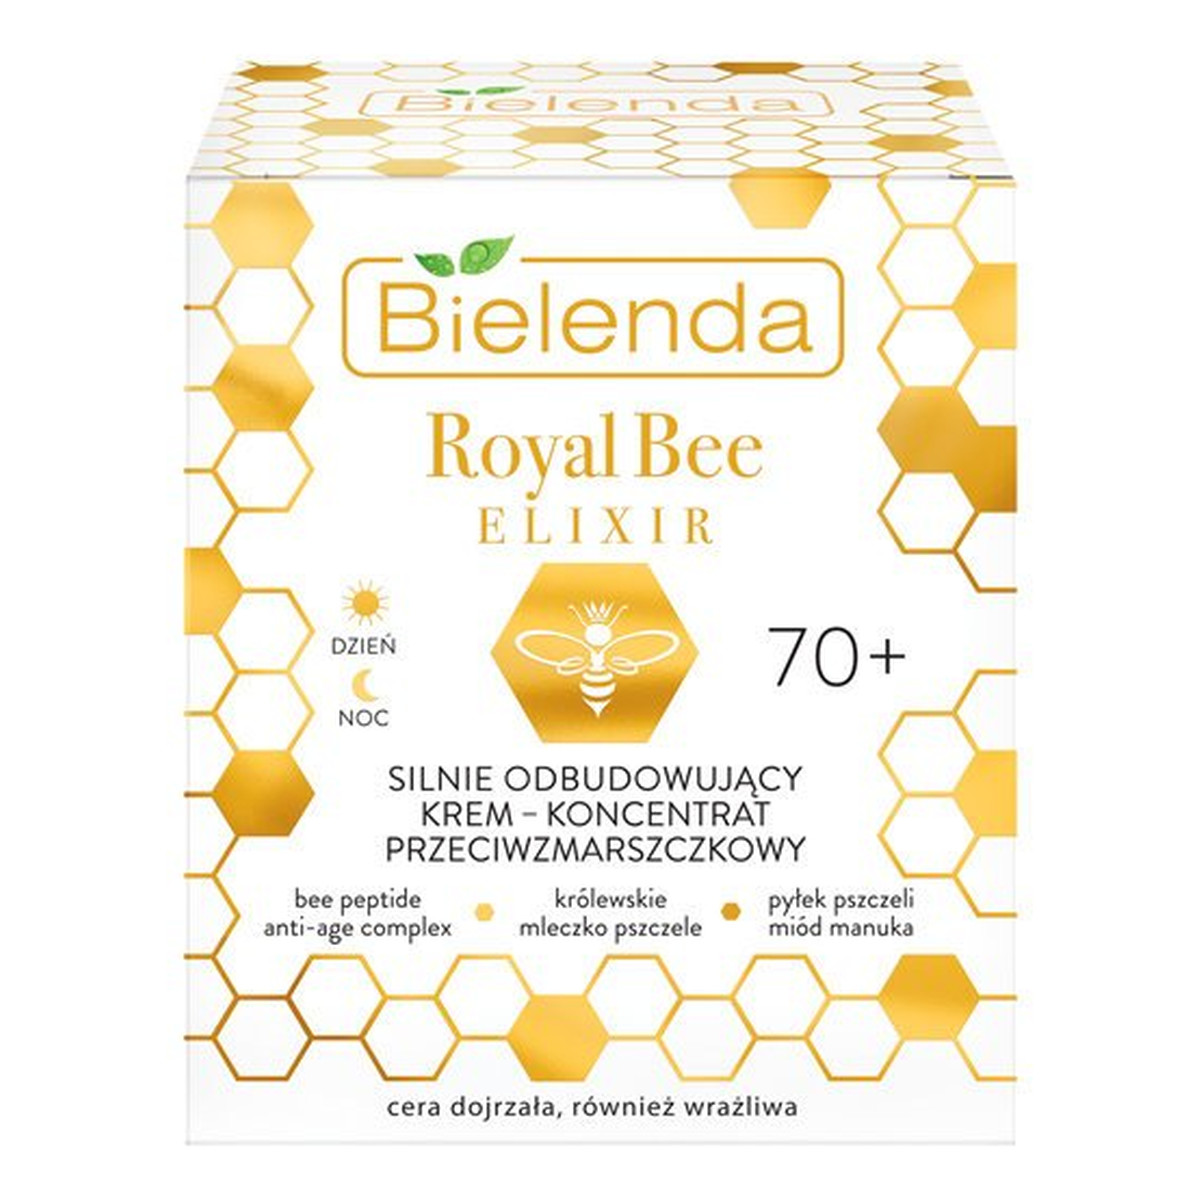 Bielenda Royal Bee Elixir Krem przeciwzmarszczkowy 70+